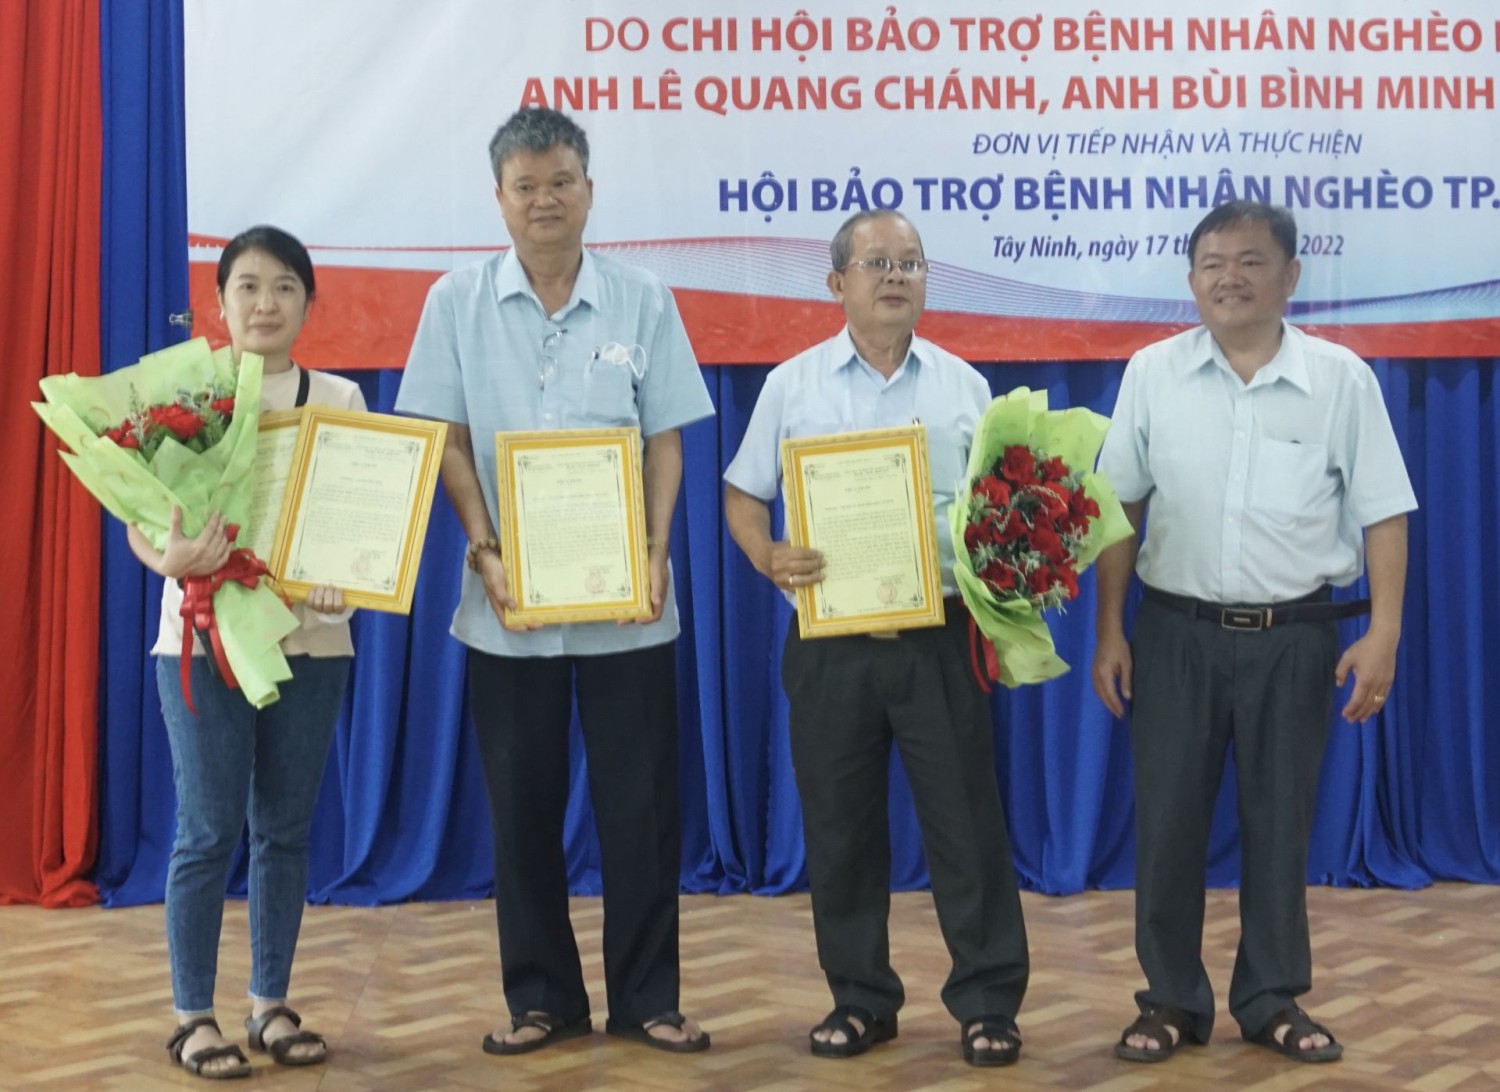 Ông Hà Minh Dảo, Phó chủ tịch thị xã Trảng Bàng tặng hoa và thư cảm ơn cho đại diện các đơn vị tài trợ chương trình.